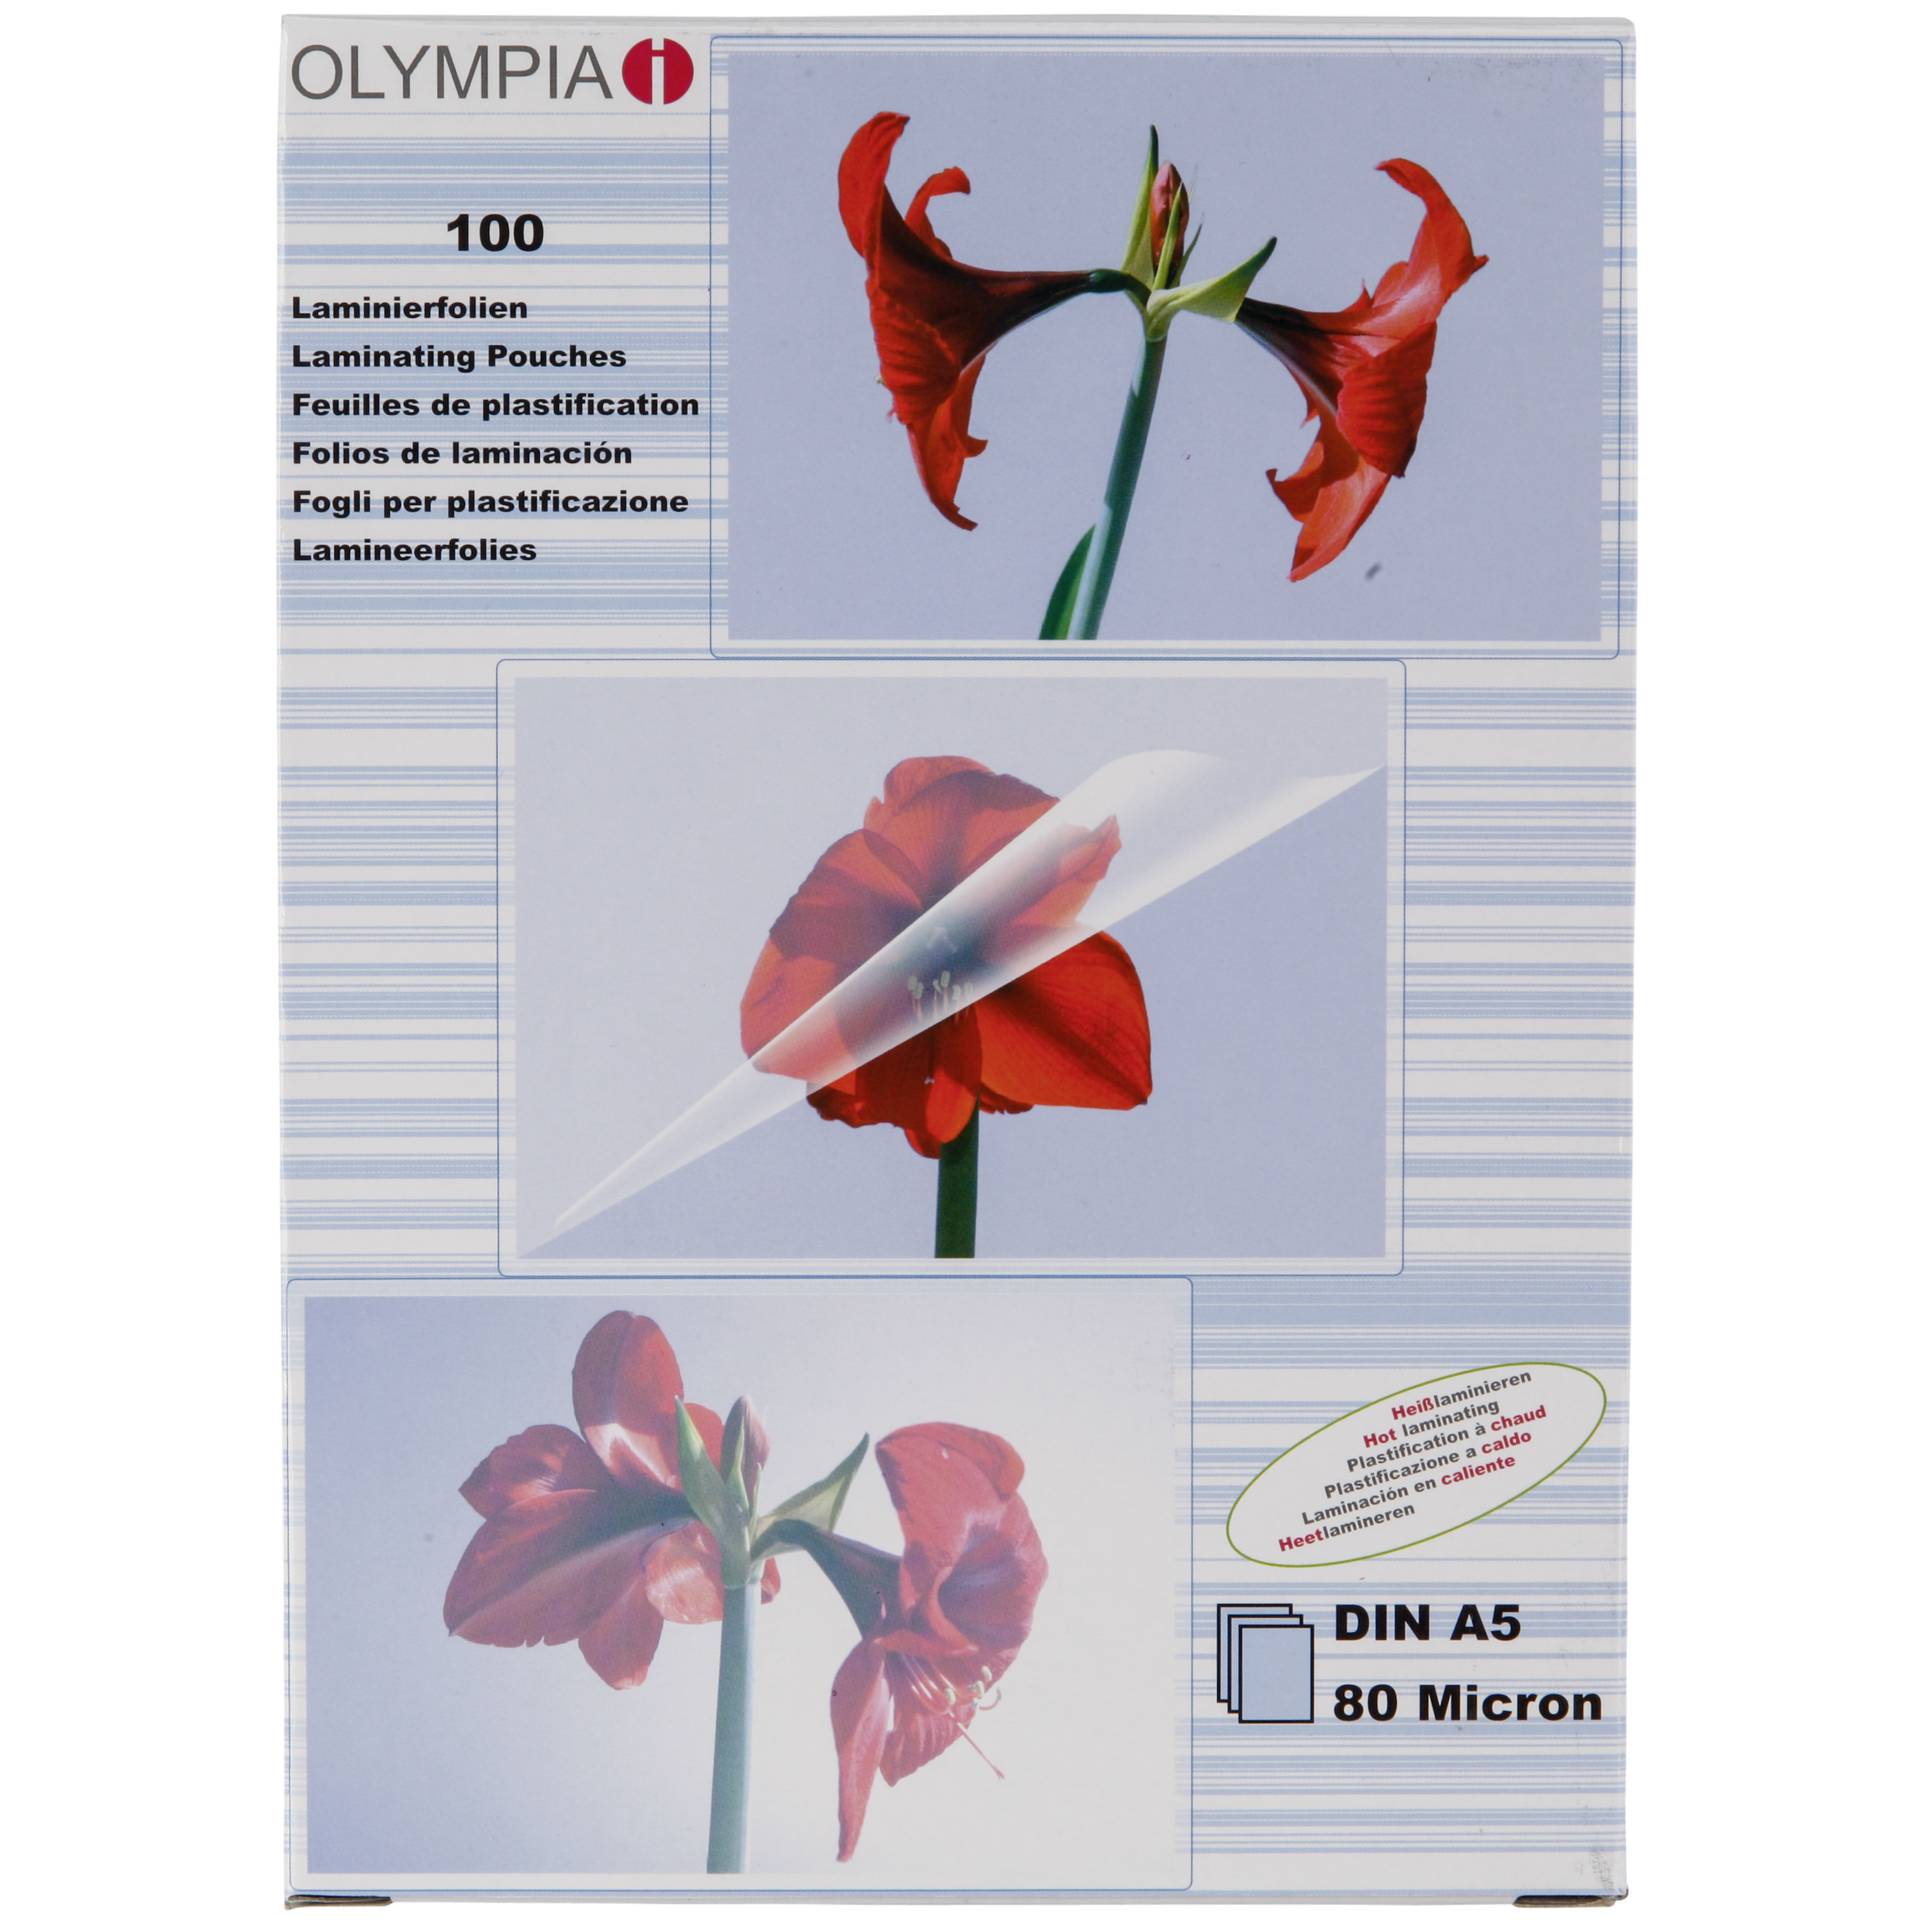 Olympia 1x100 DIN A5 80 micron Laminierhülle 100 Stück(e)